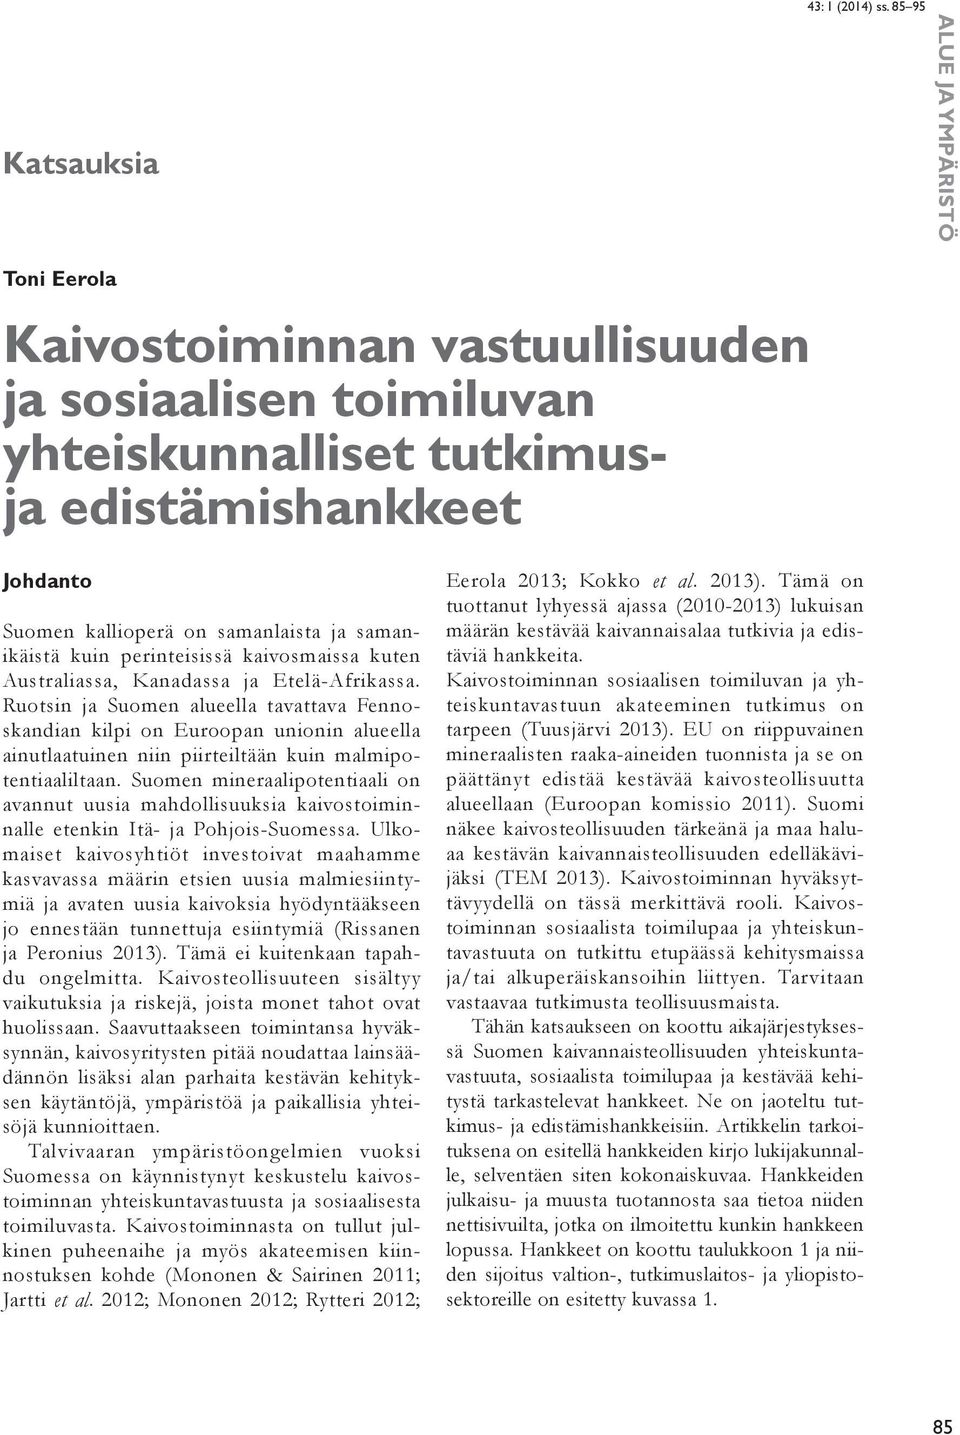 Ruotsin ja Suomen alueella tavattava Fennoskandian kilpi on Euroopan unionin alueella ainutlaatuinen niin piirteiltään kuin malmipotentiaaliltaan.